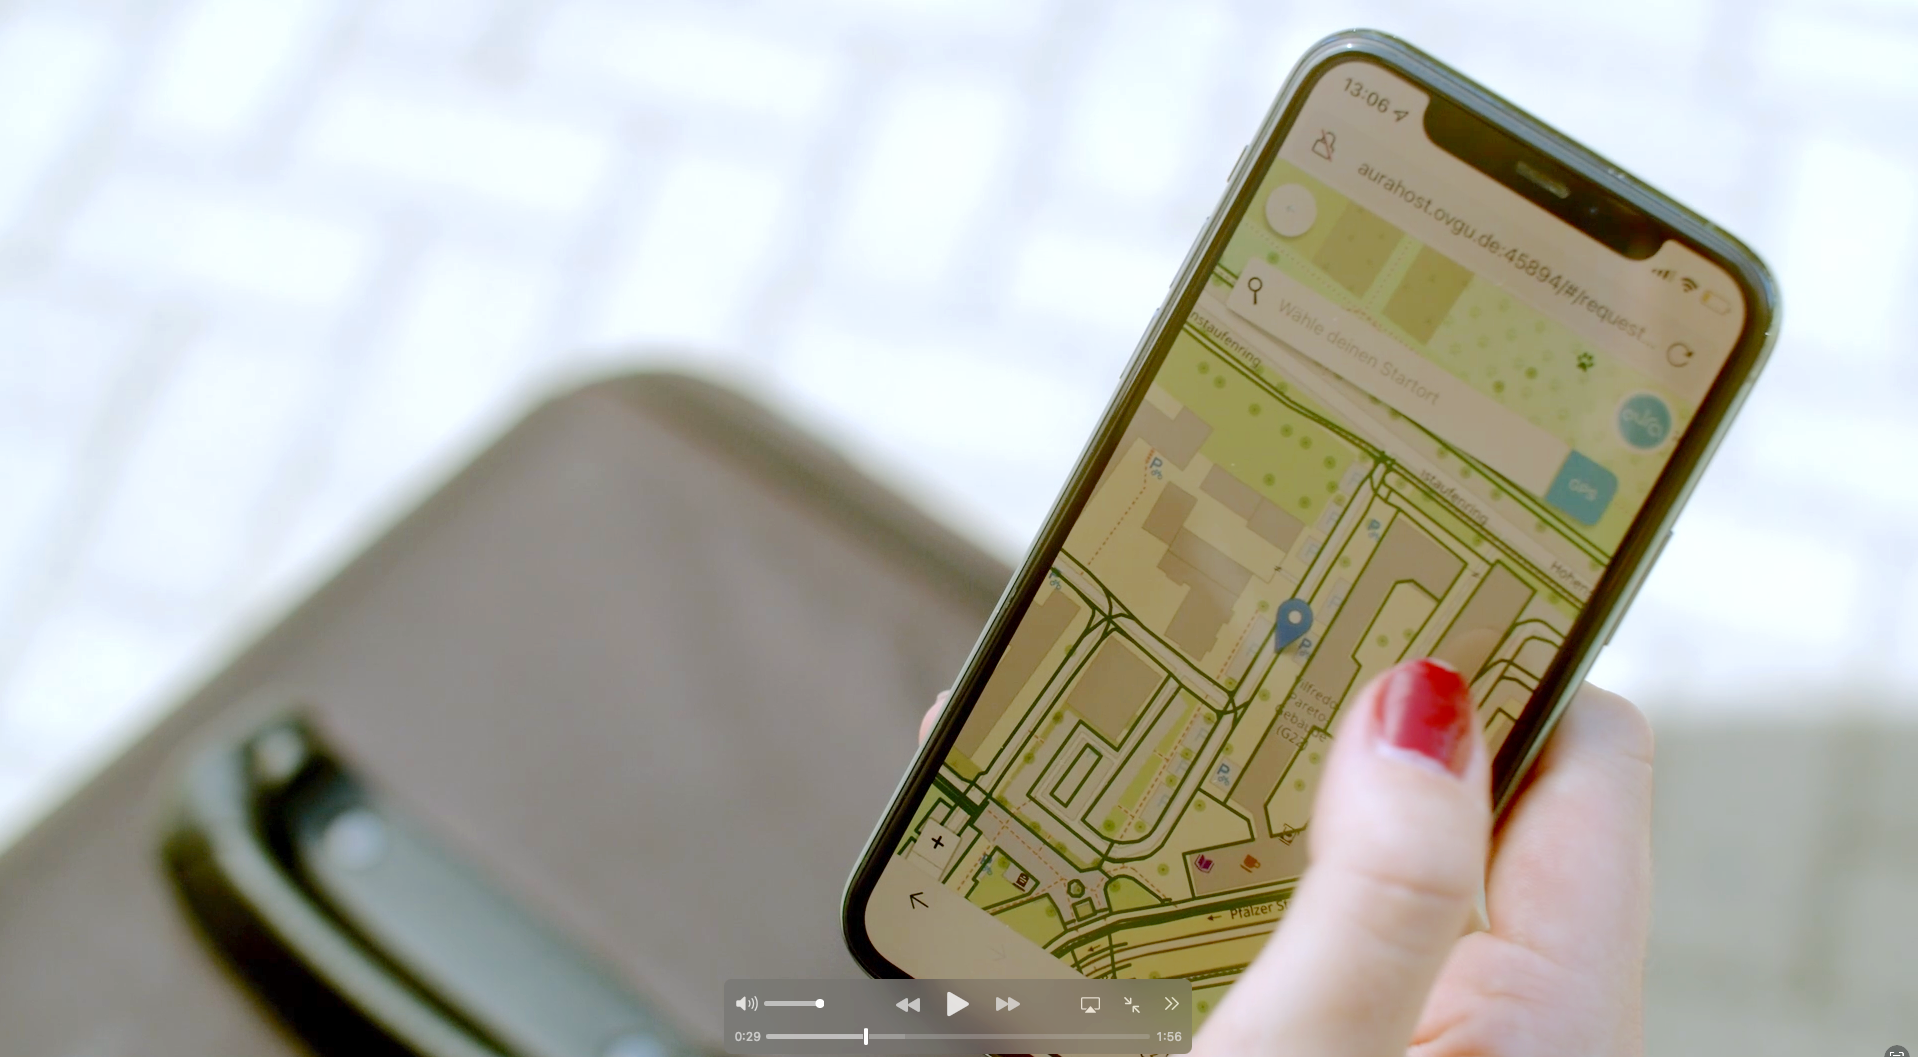 Foto: Eine Hand hält ein Smartphone auf dem eine digitale Straßenkarte zu sehen ist